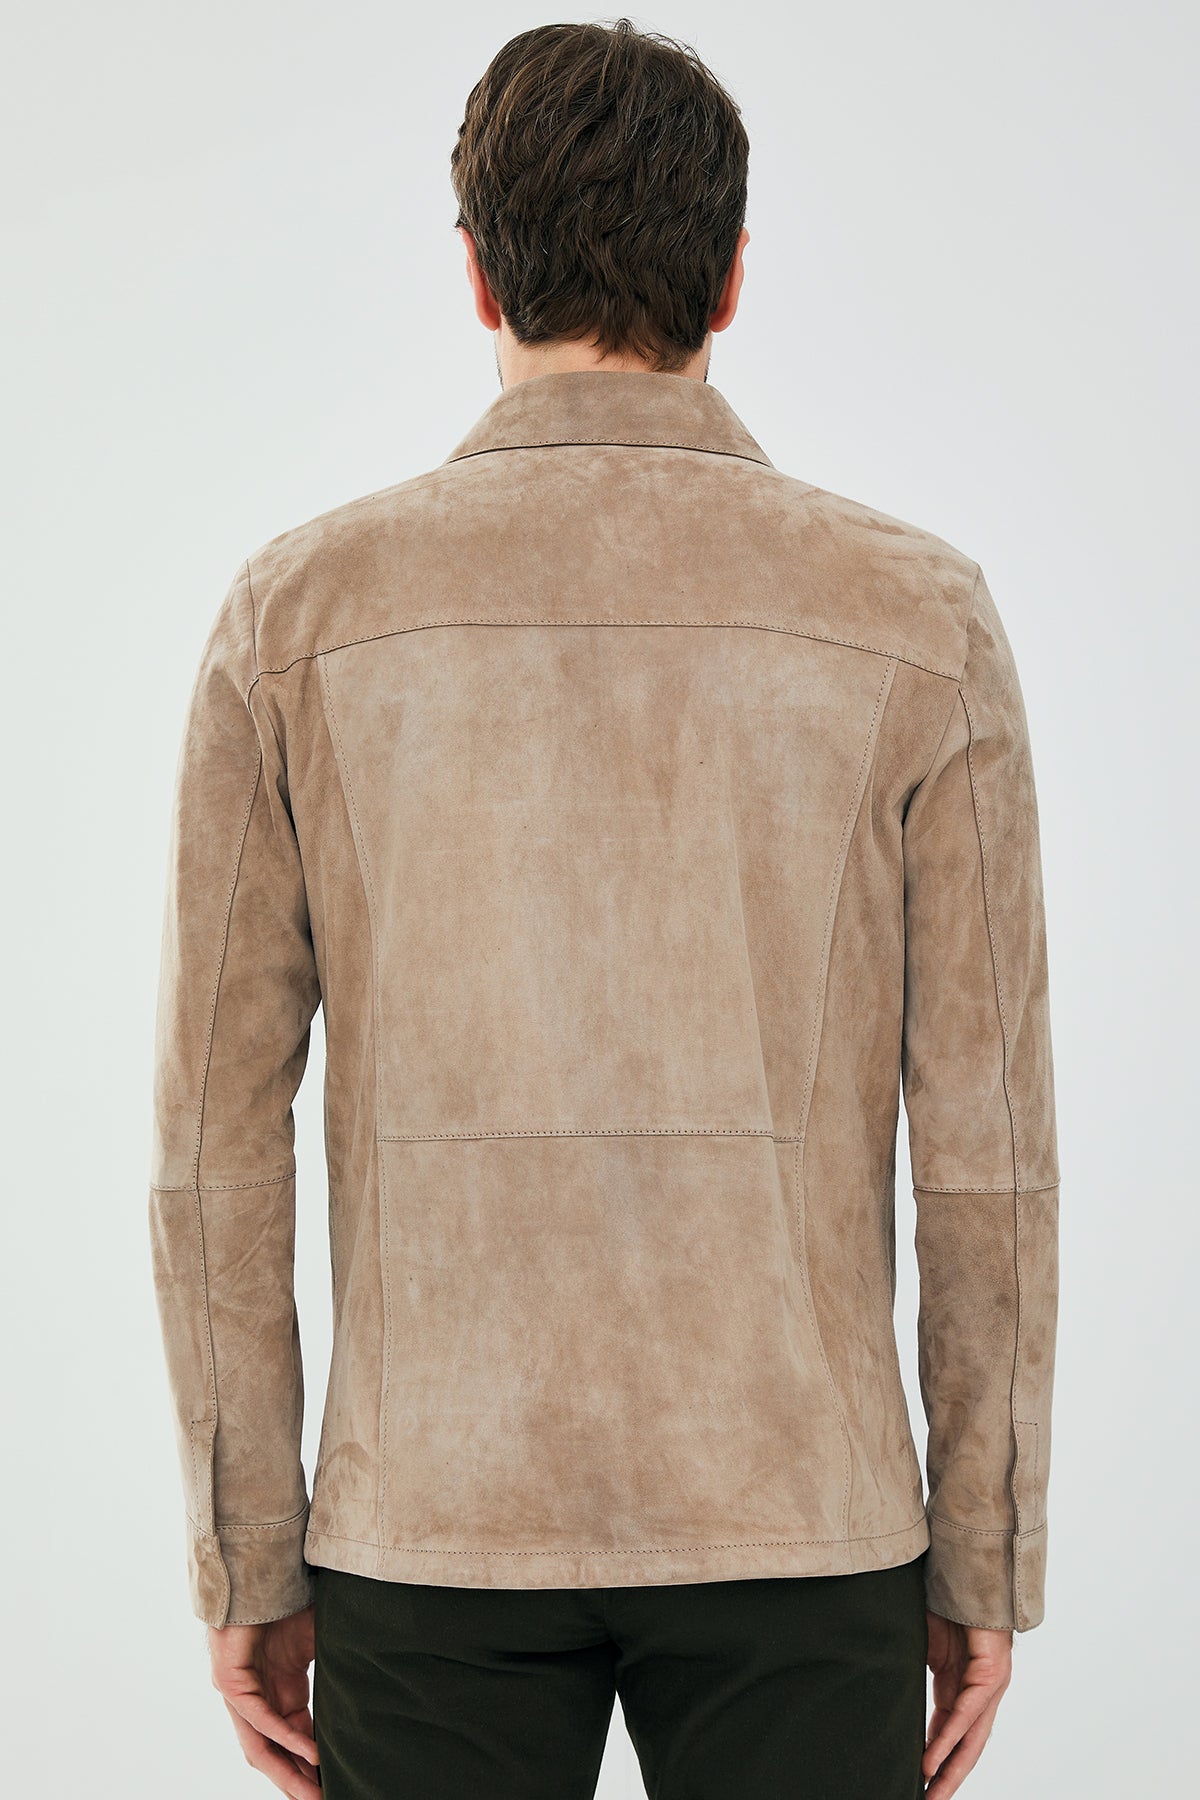 Navas Erkek Bej Gömlek Tipi Çıtçıtlı Süet Deri Ceket